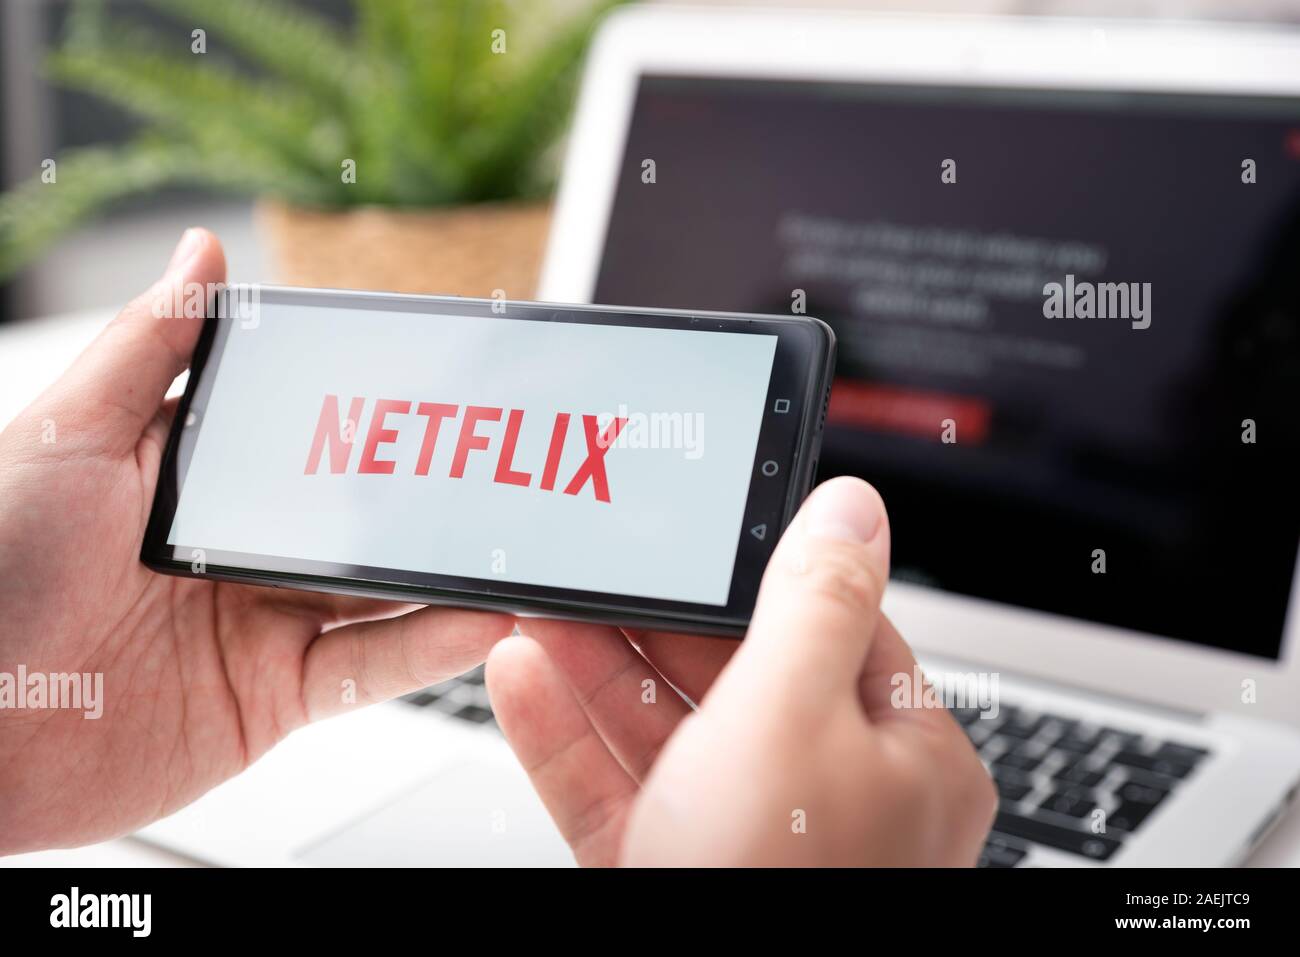 Wroclaw, Polen - Oct 23, 2019: der Mensch mit Netflix Logo auf dem Bildschirm angezeigt. Netflix ist die gängigsten Video Streaming Plattform. Stockfoto